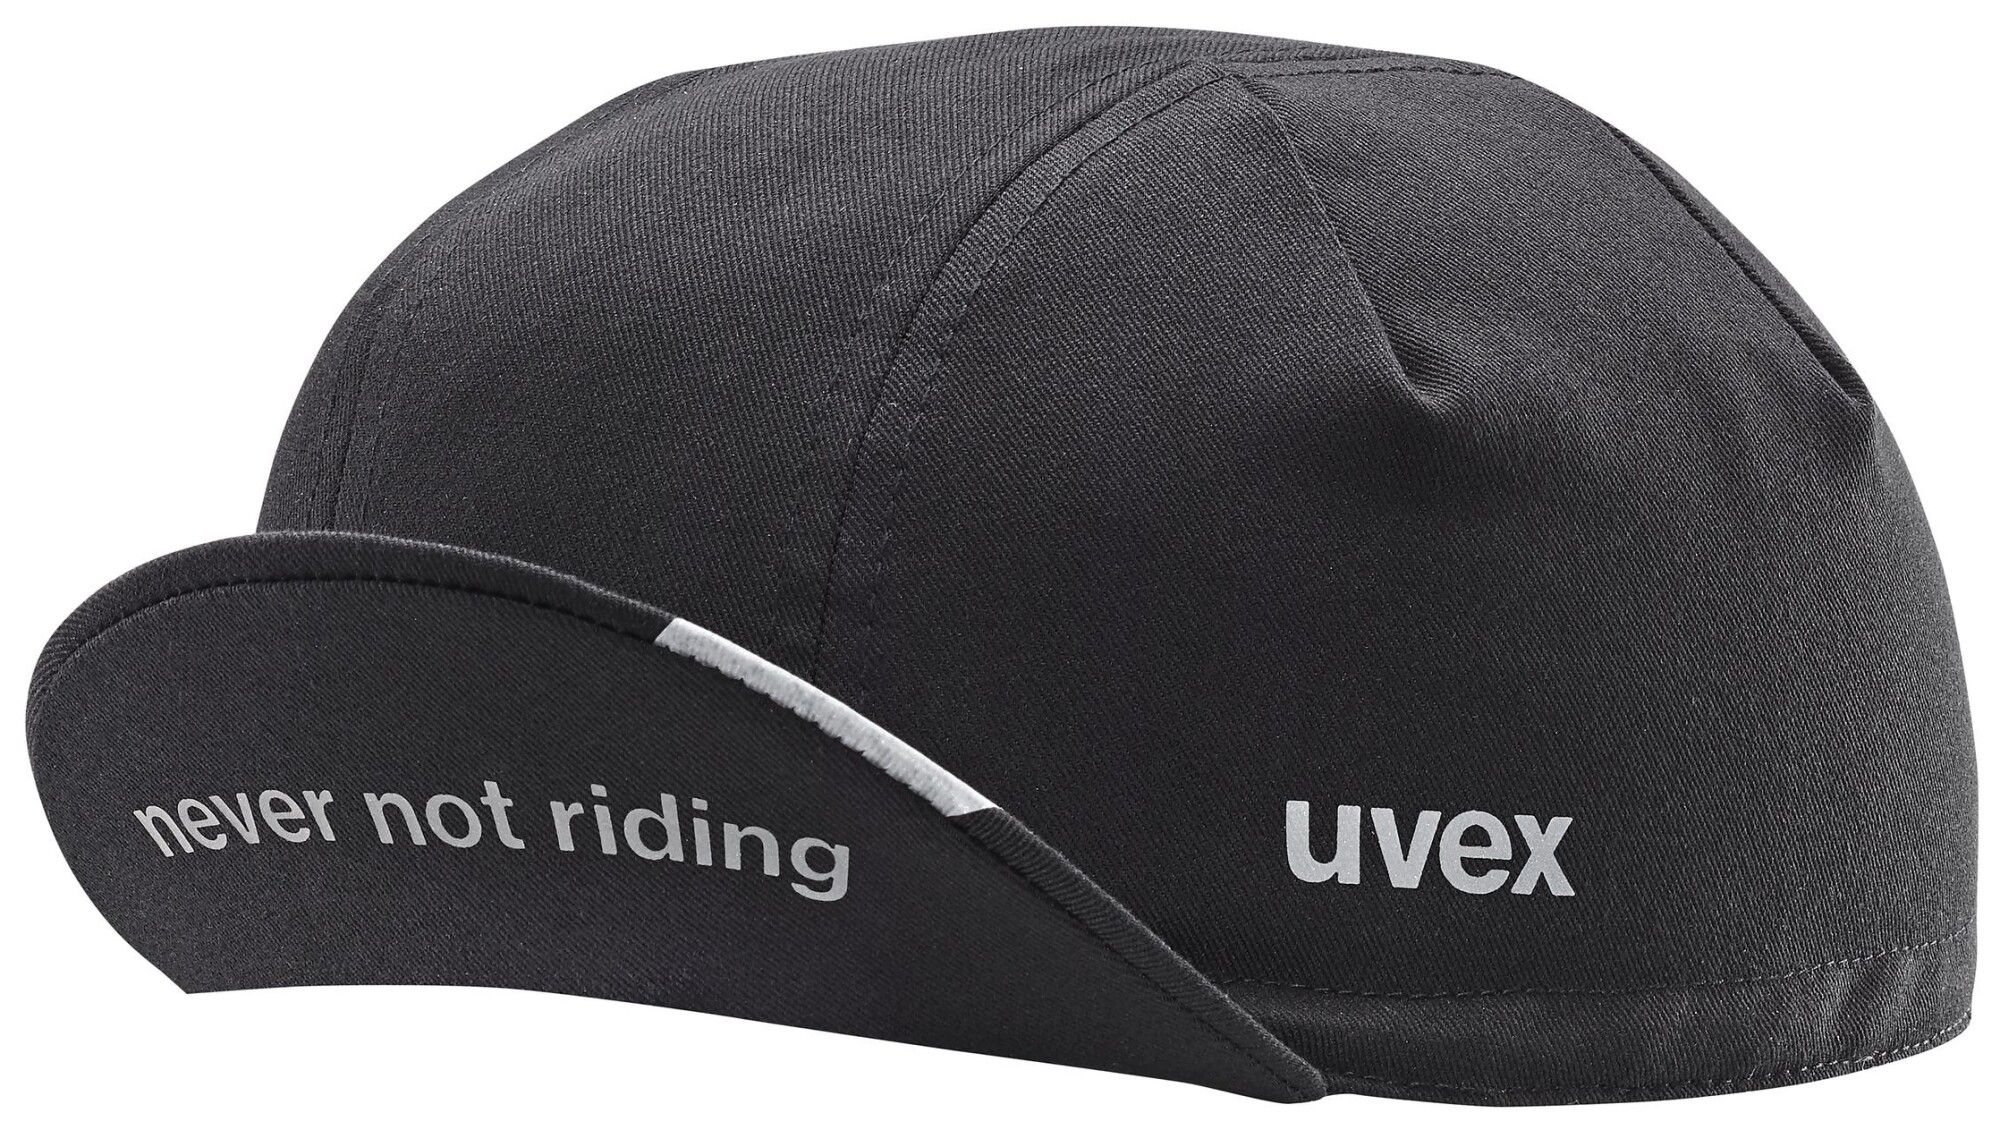 Uvex uvex cycling cap (Bild 3)